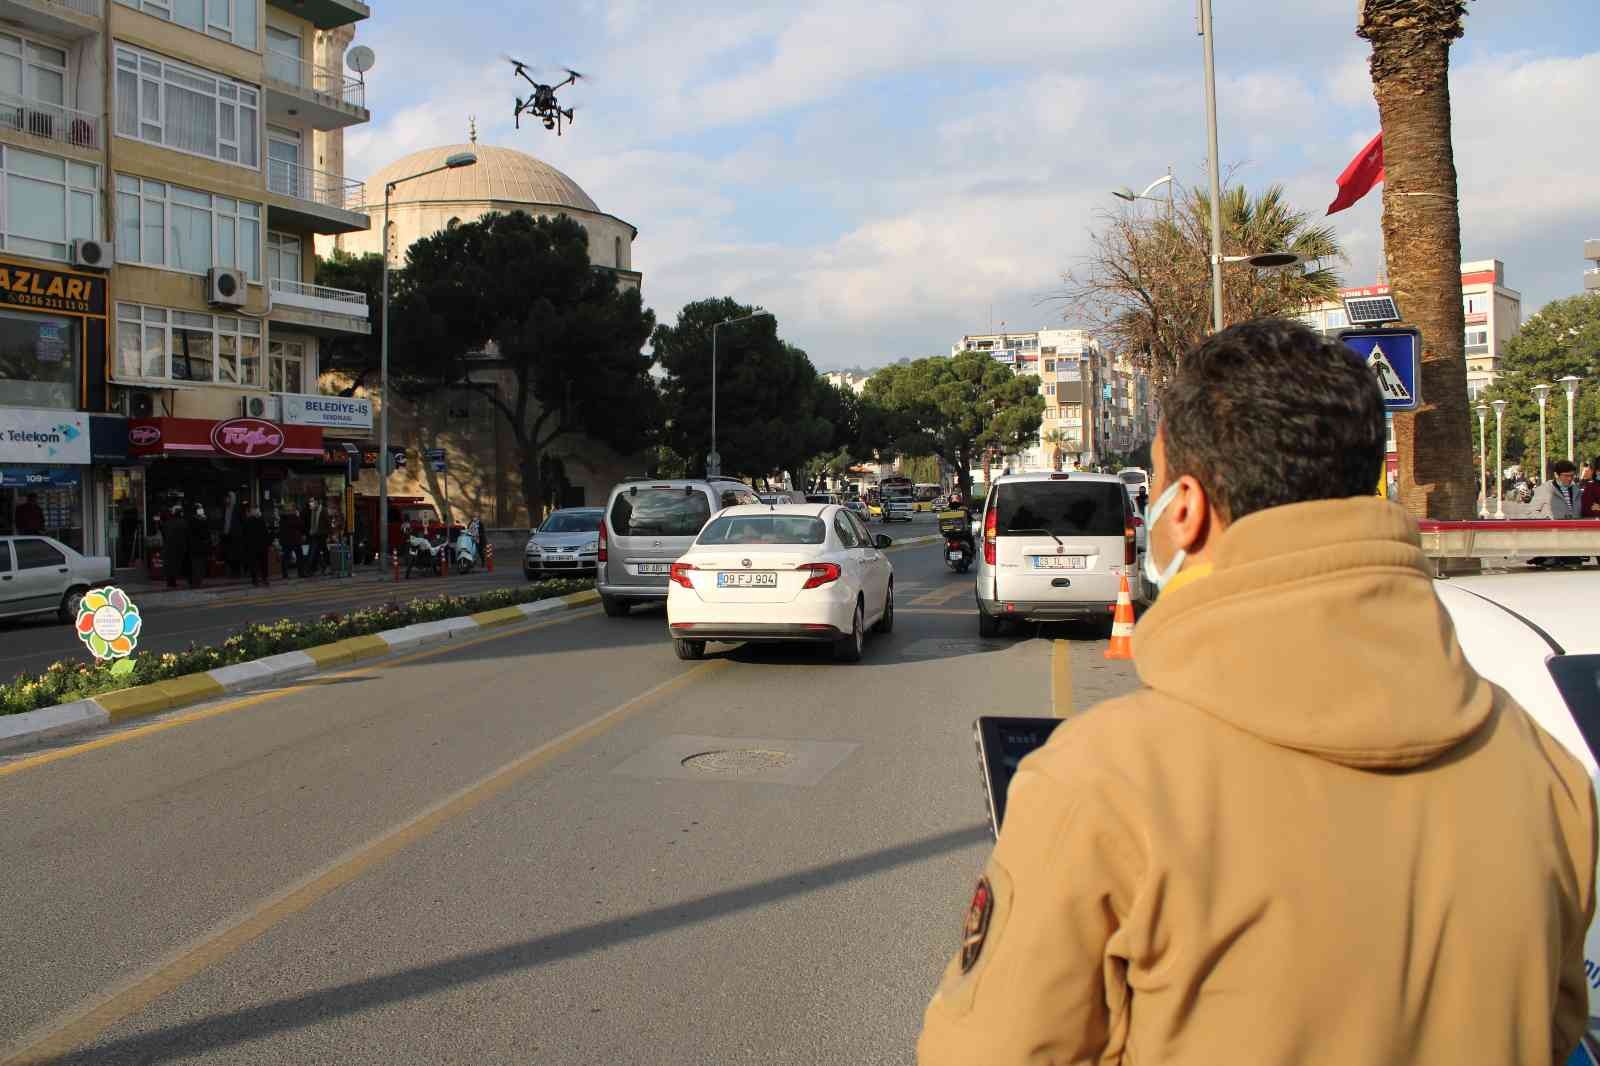 Aydın’da drone denetimlerinde bir yılda 4 bin ihlal tespit edildi #aydin